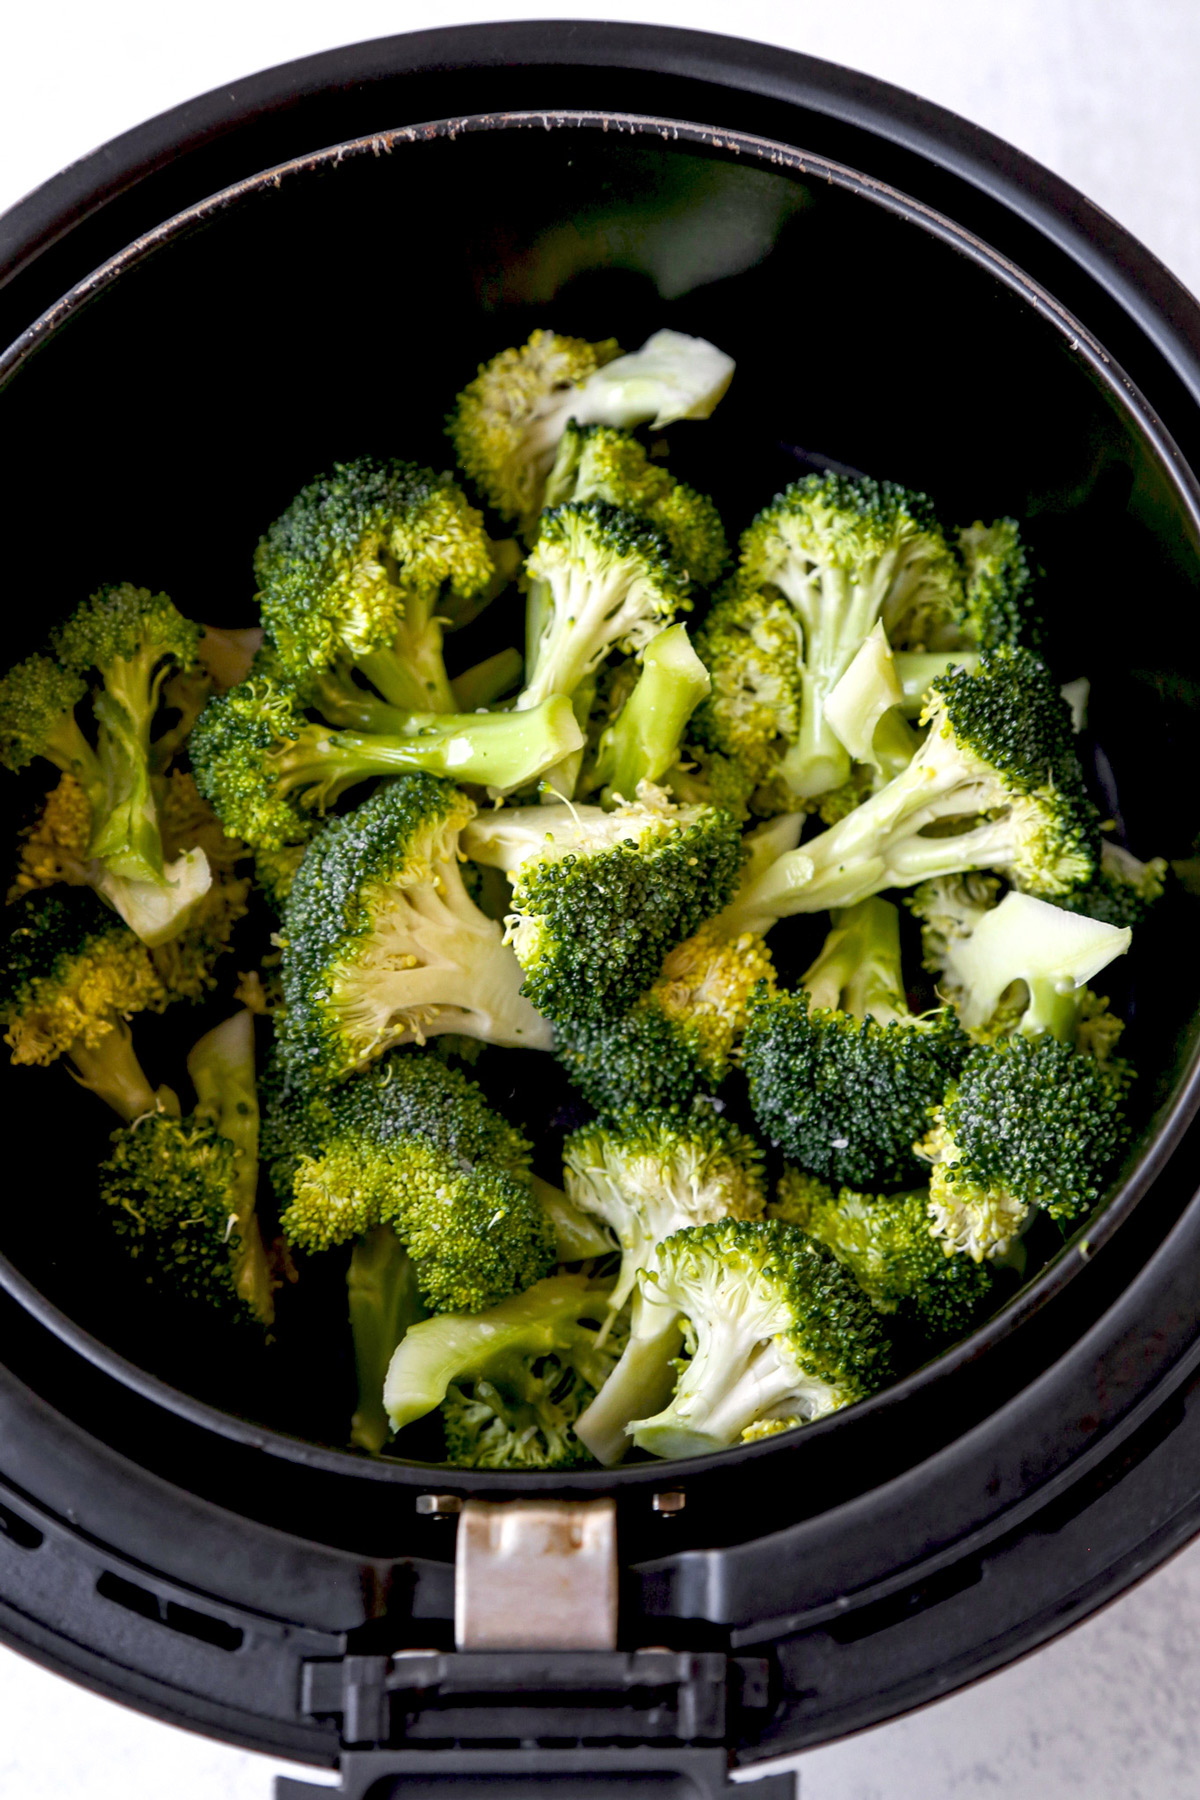 Broccoli in air fryer